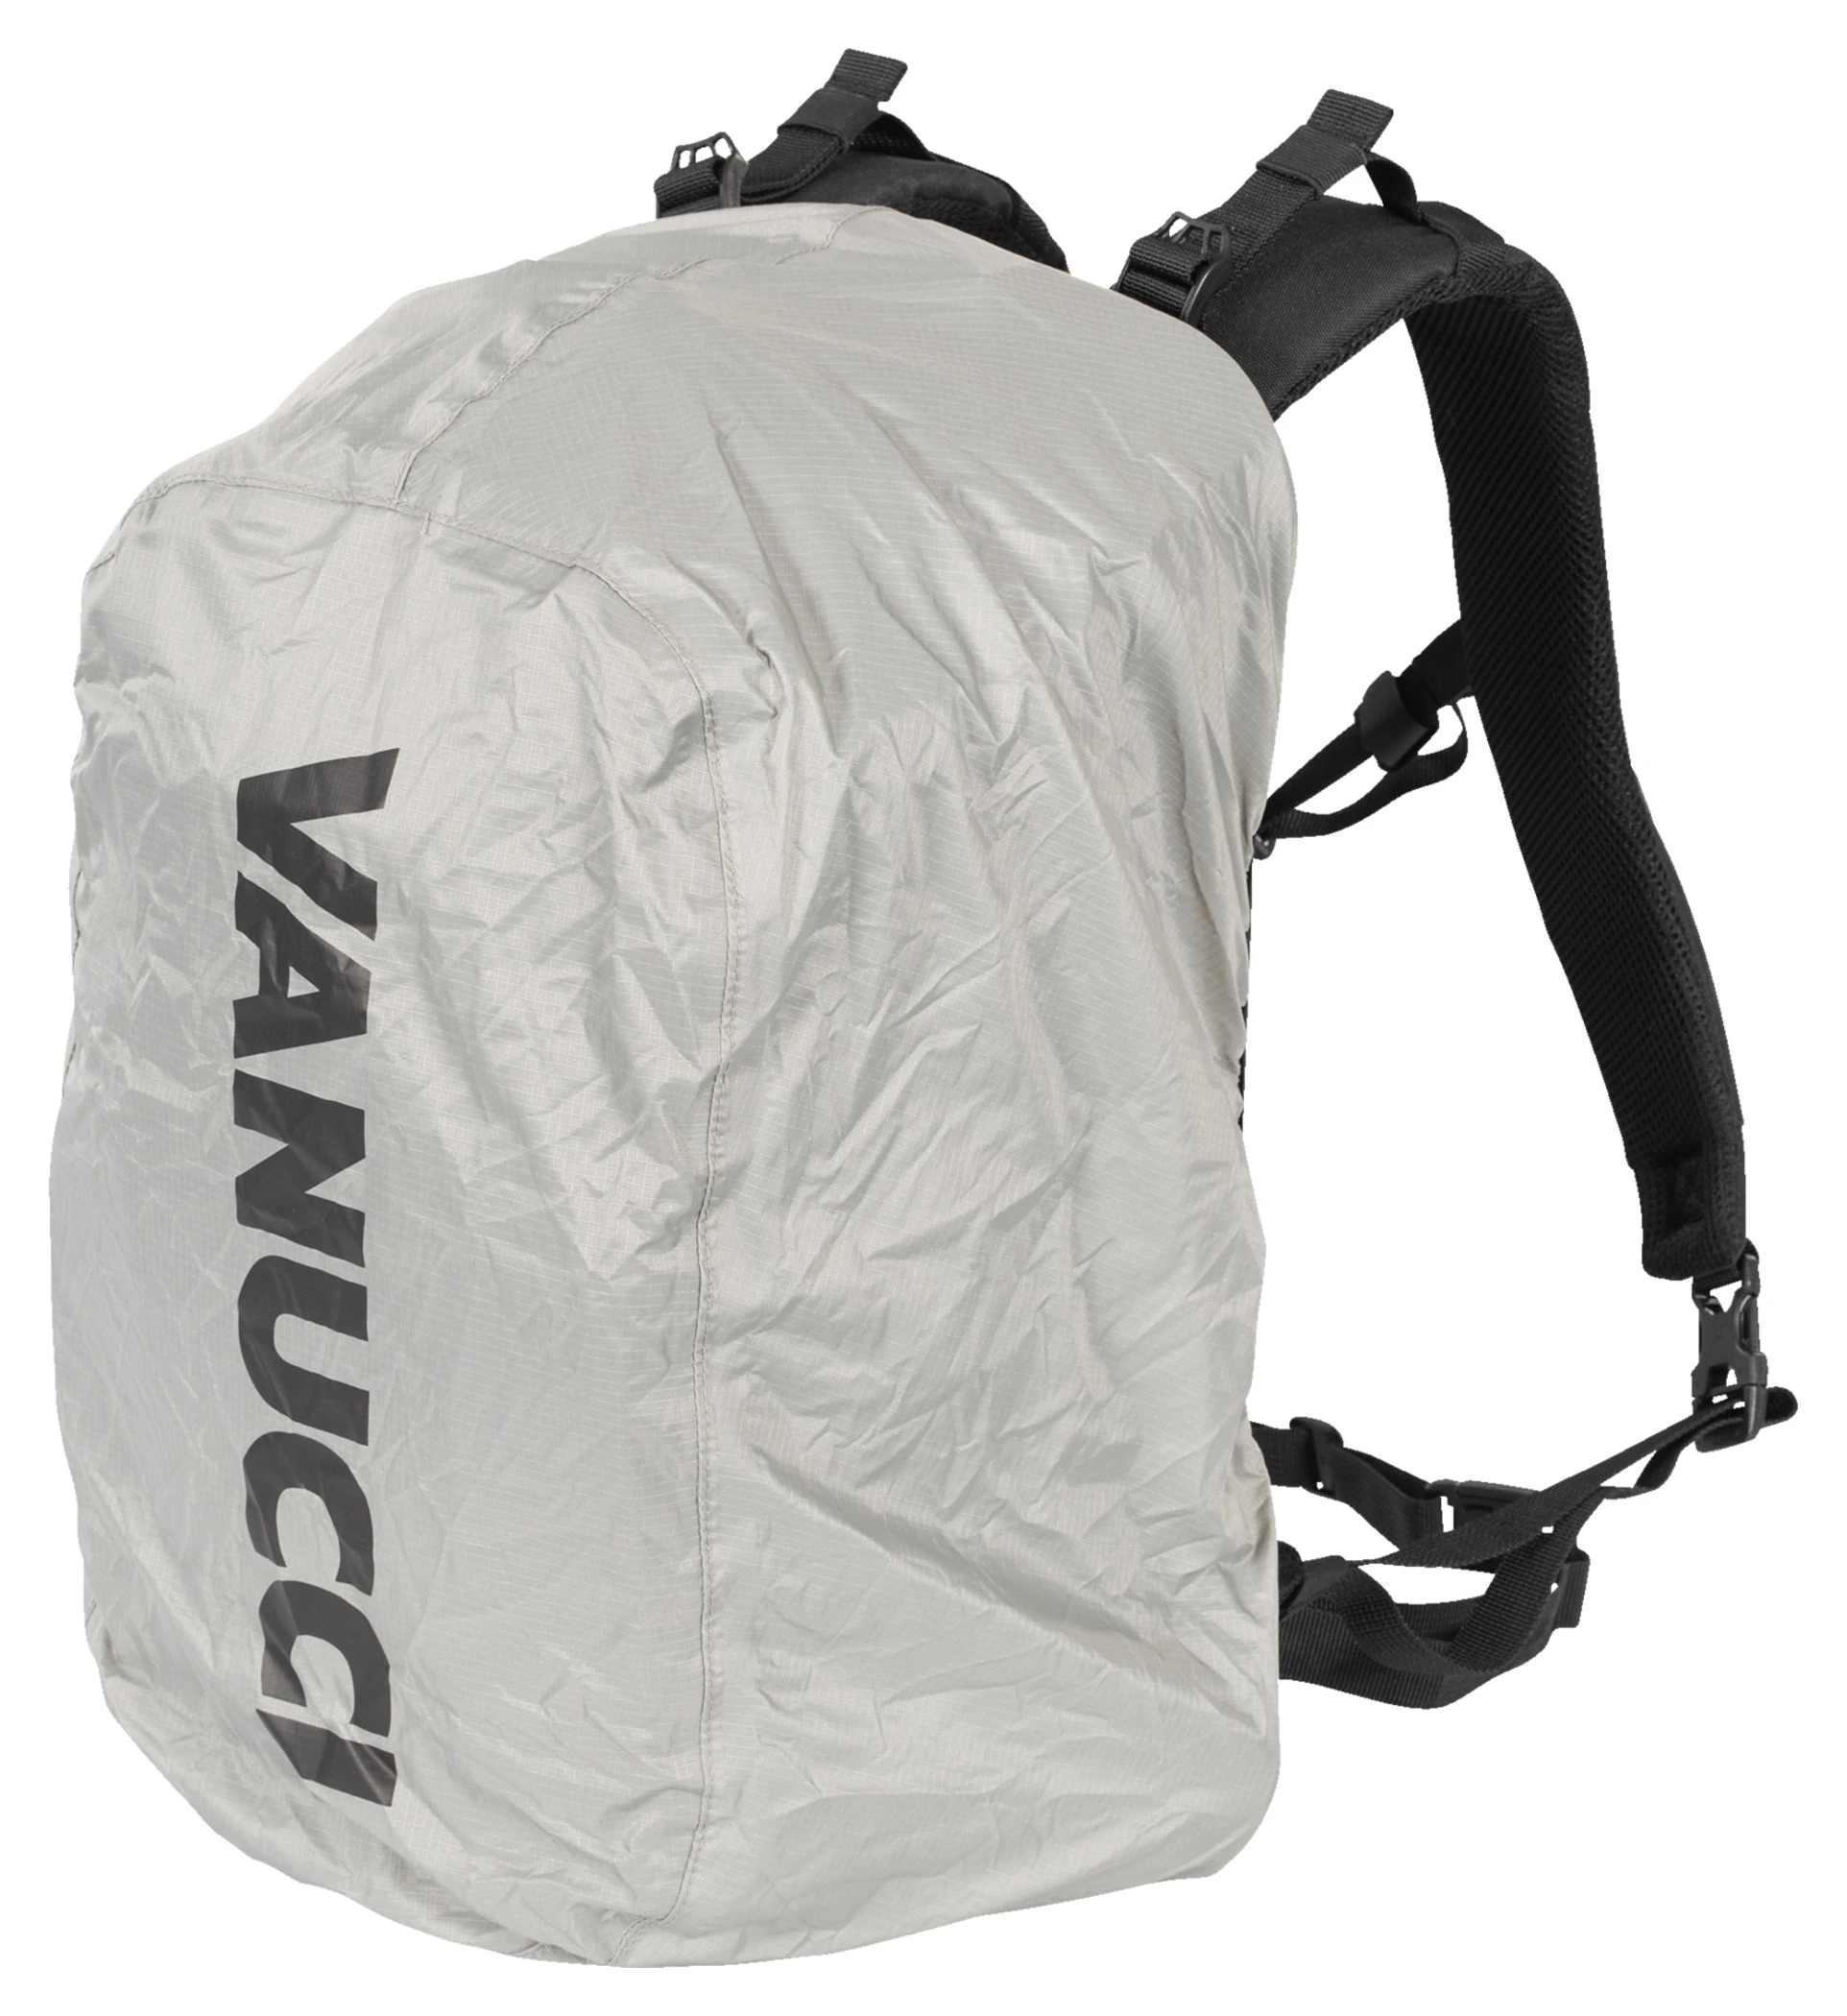 Voyage moto : le sac à compression, fallait y penser, Vanucci l'a fait !